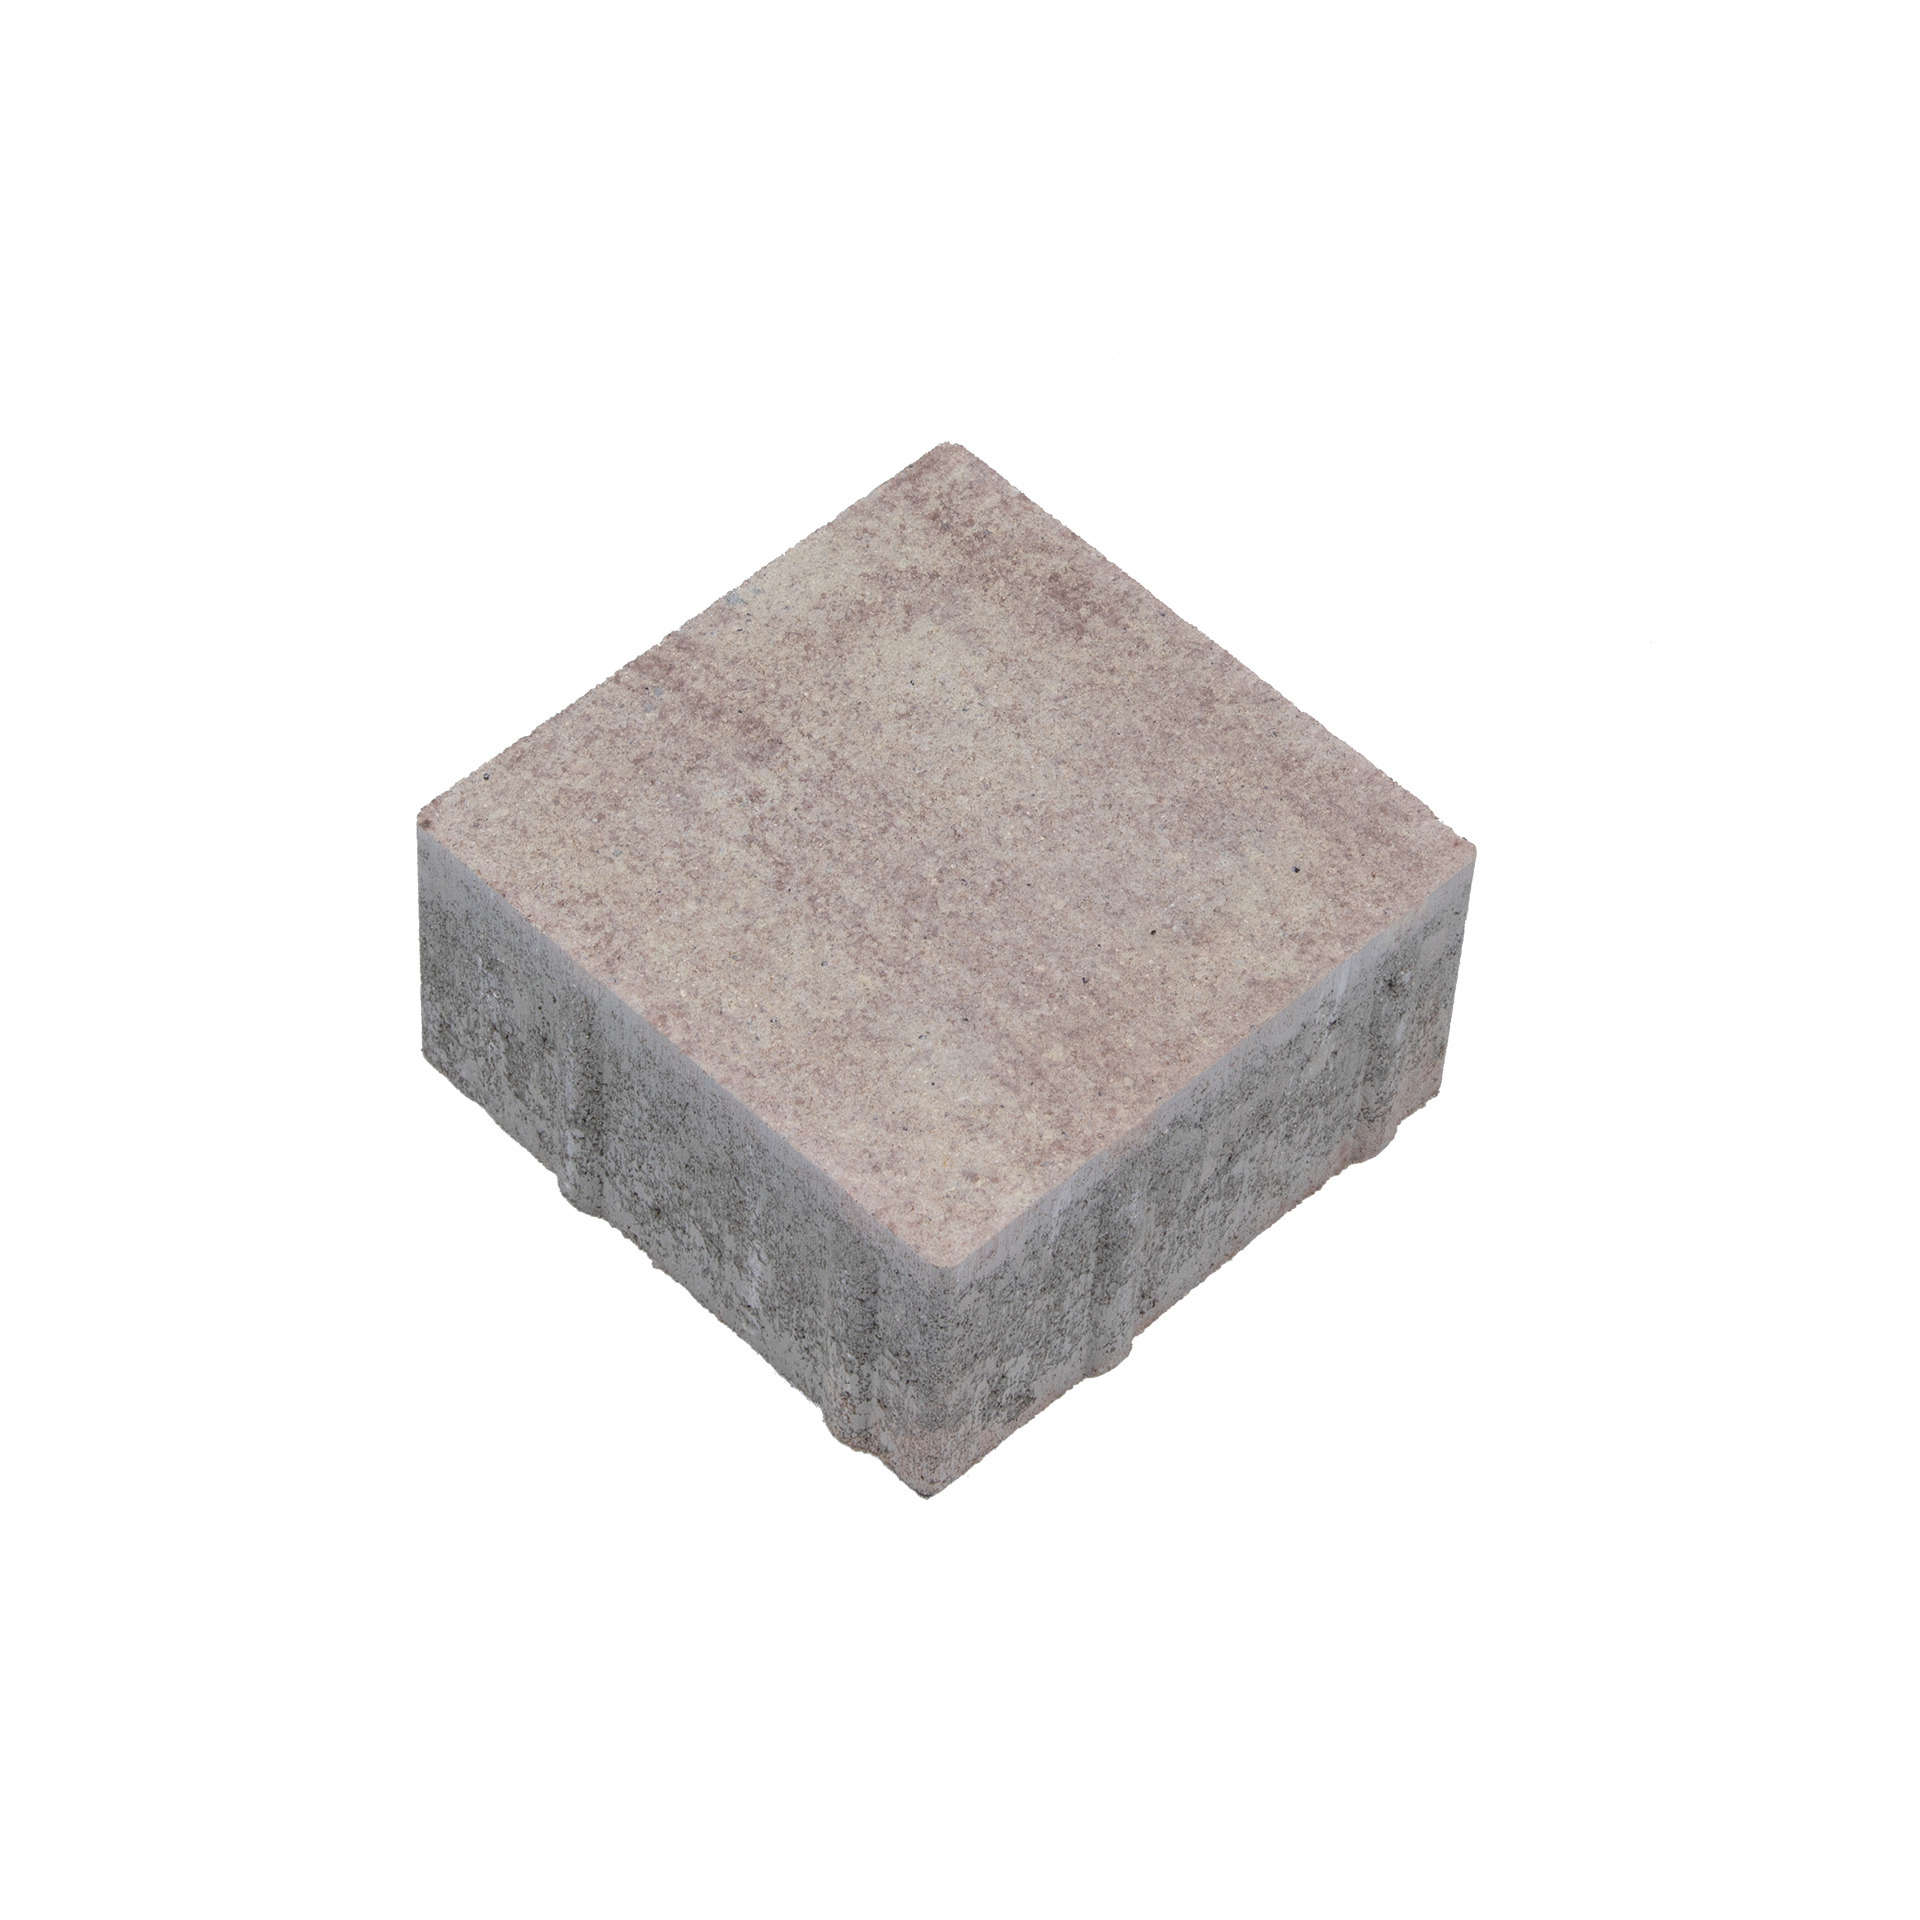 Godelmann Betonpflaster CAMPA Stone nativo Beige-braun nuanciert 16x16x8 cm